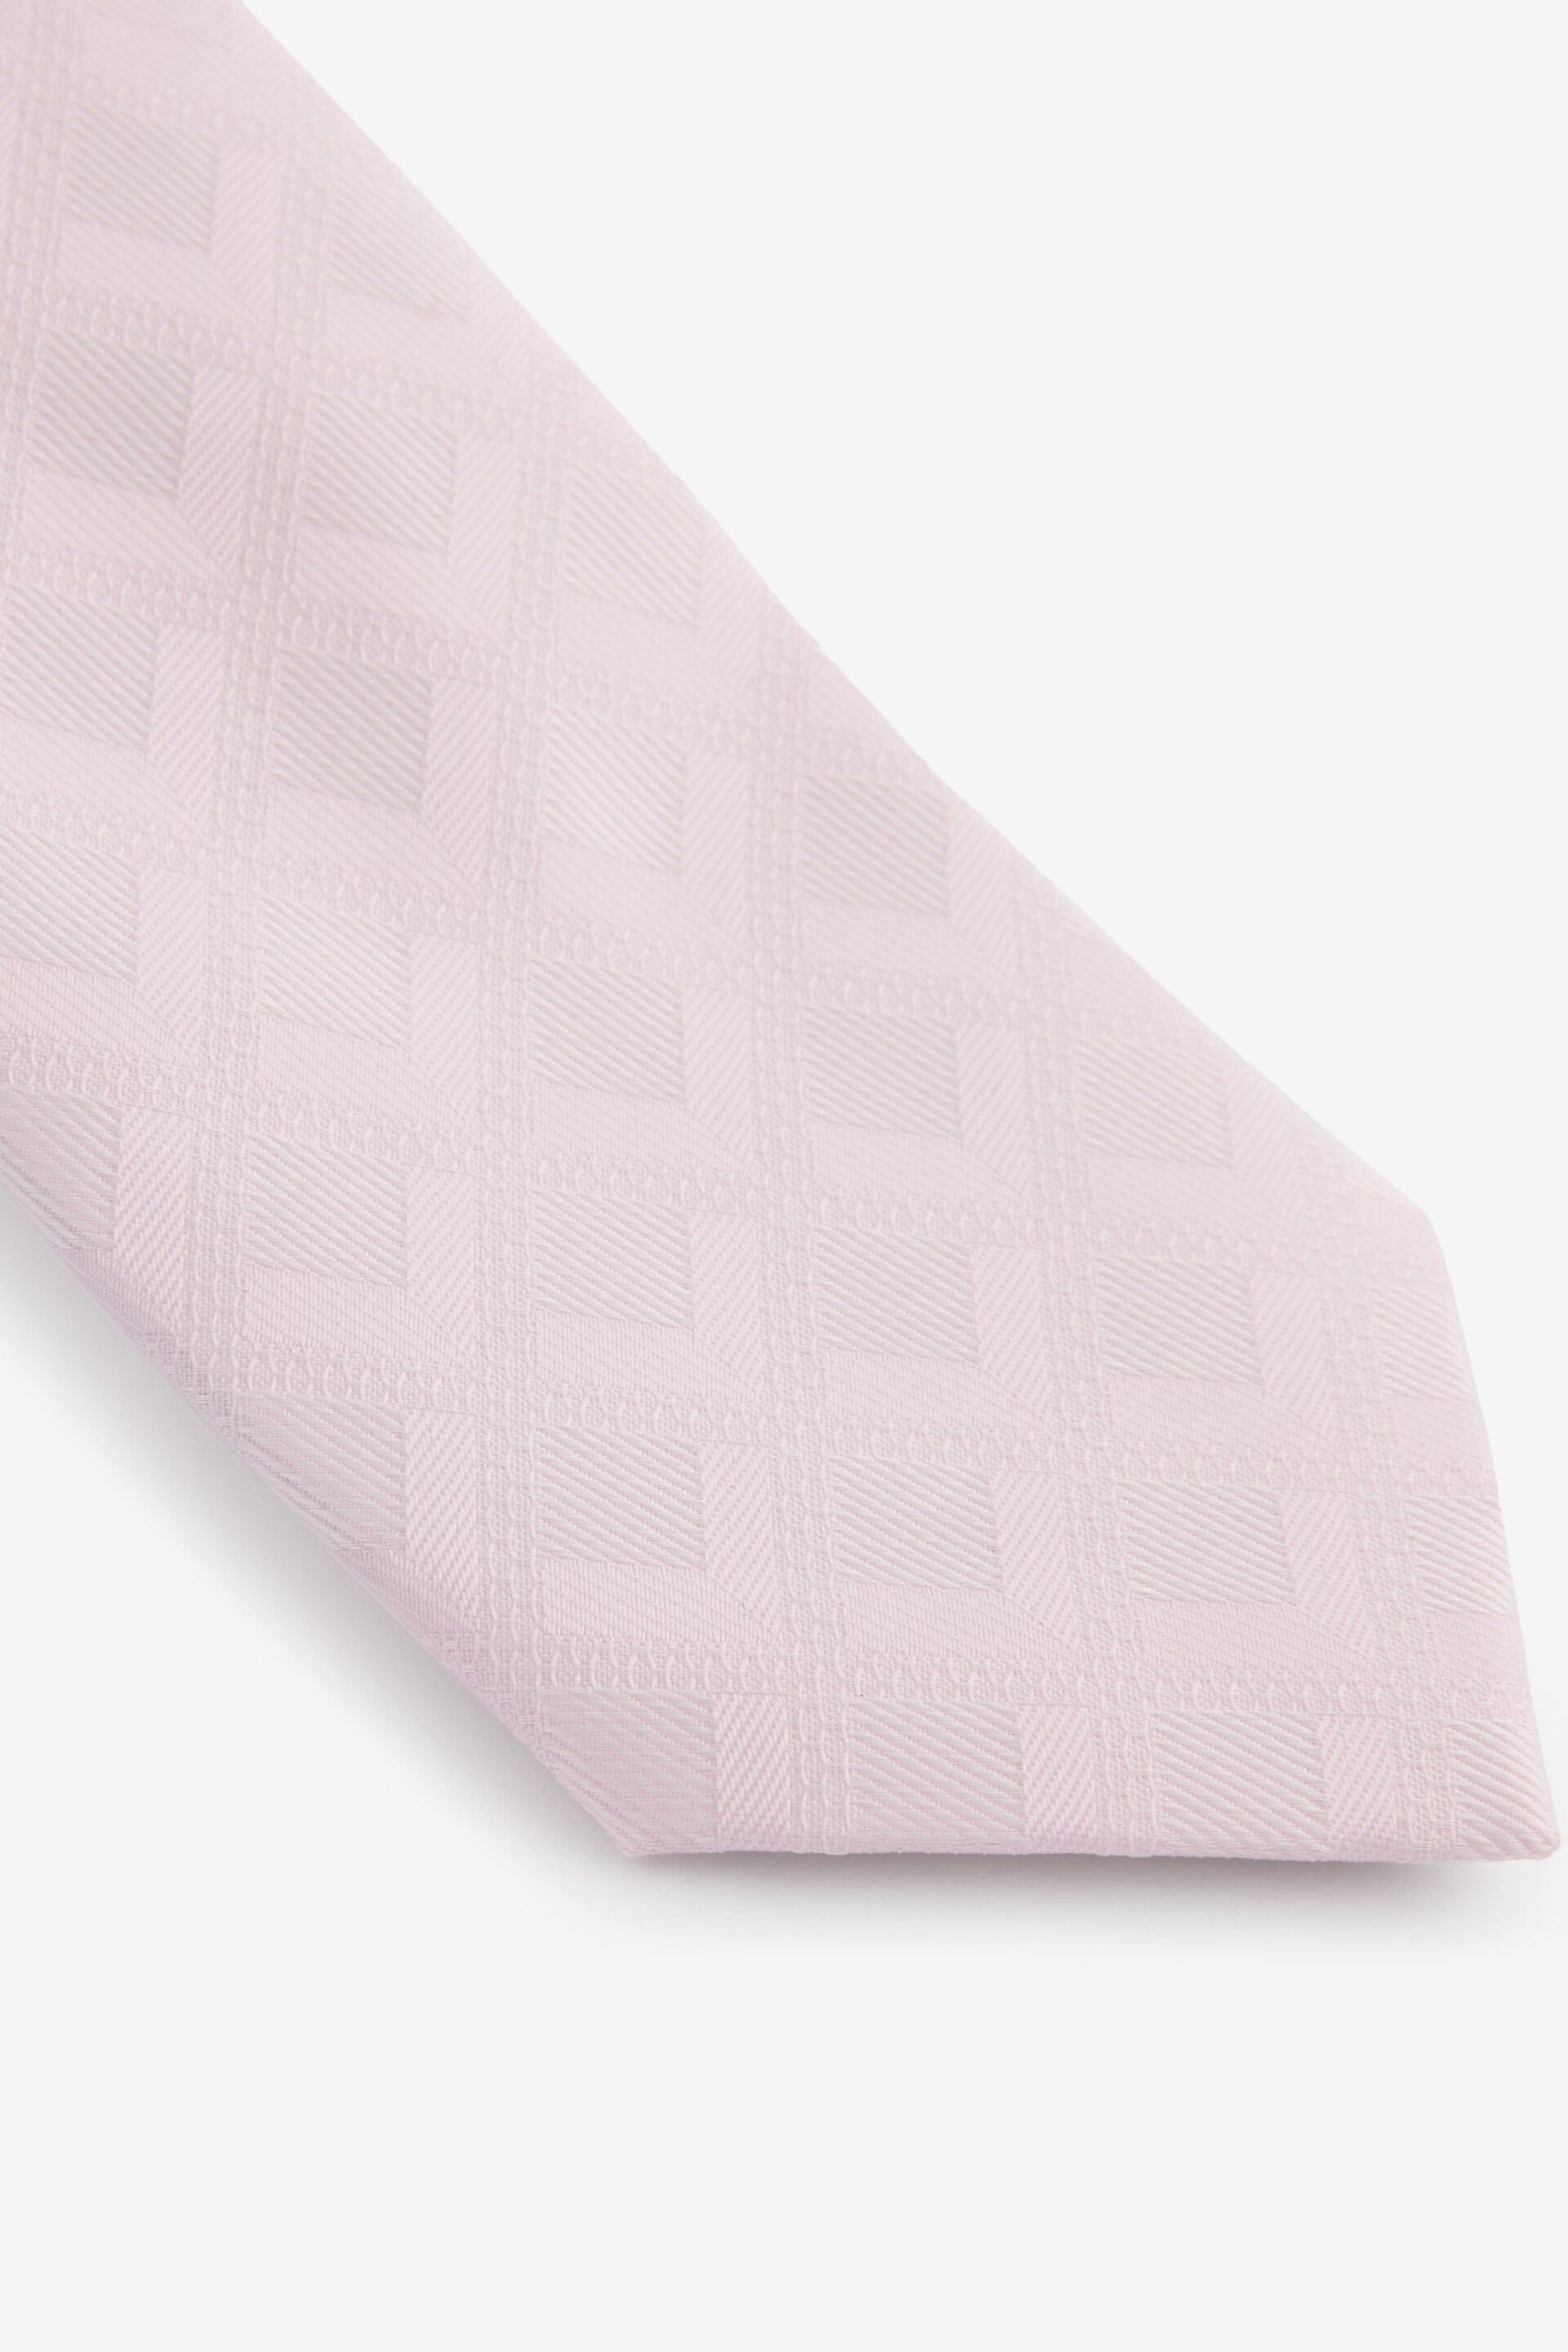 Pink Diamond Jacquard Tie - Image 2 of 3